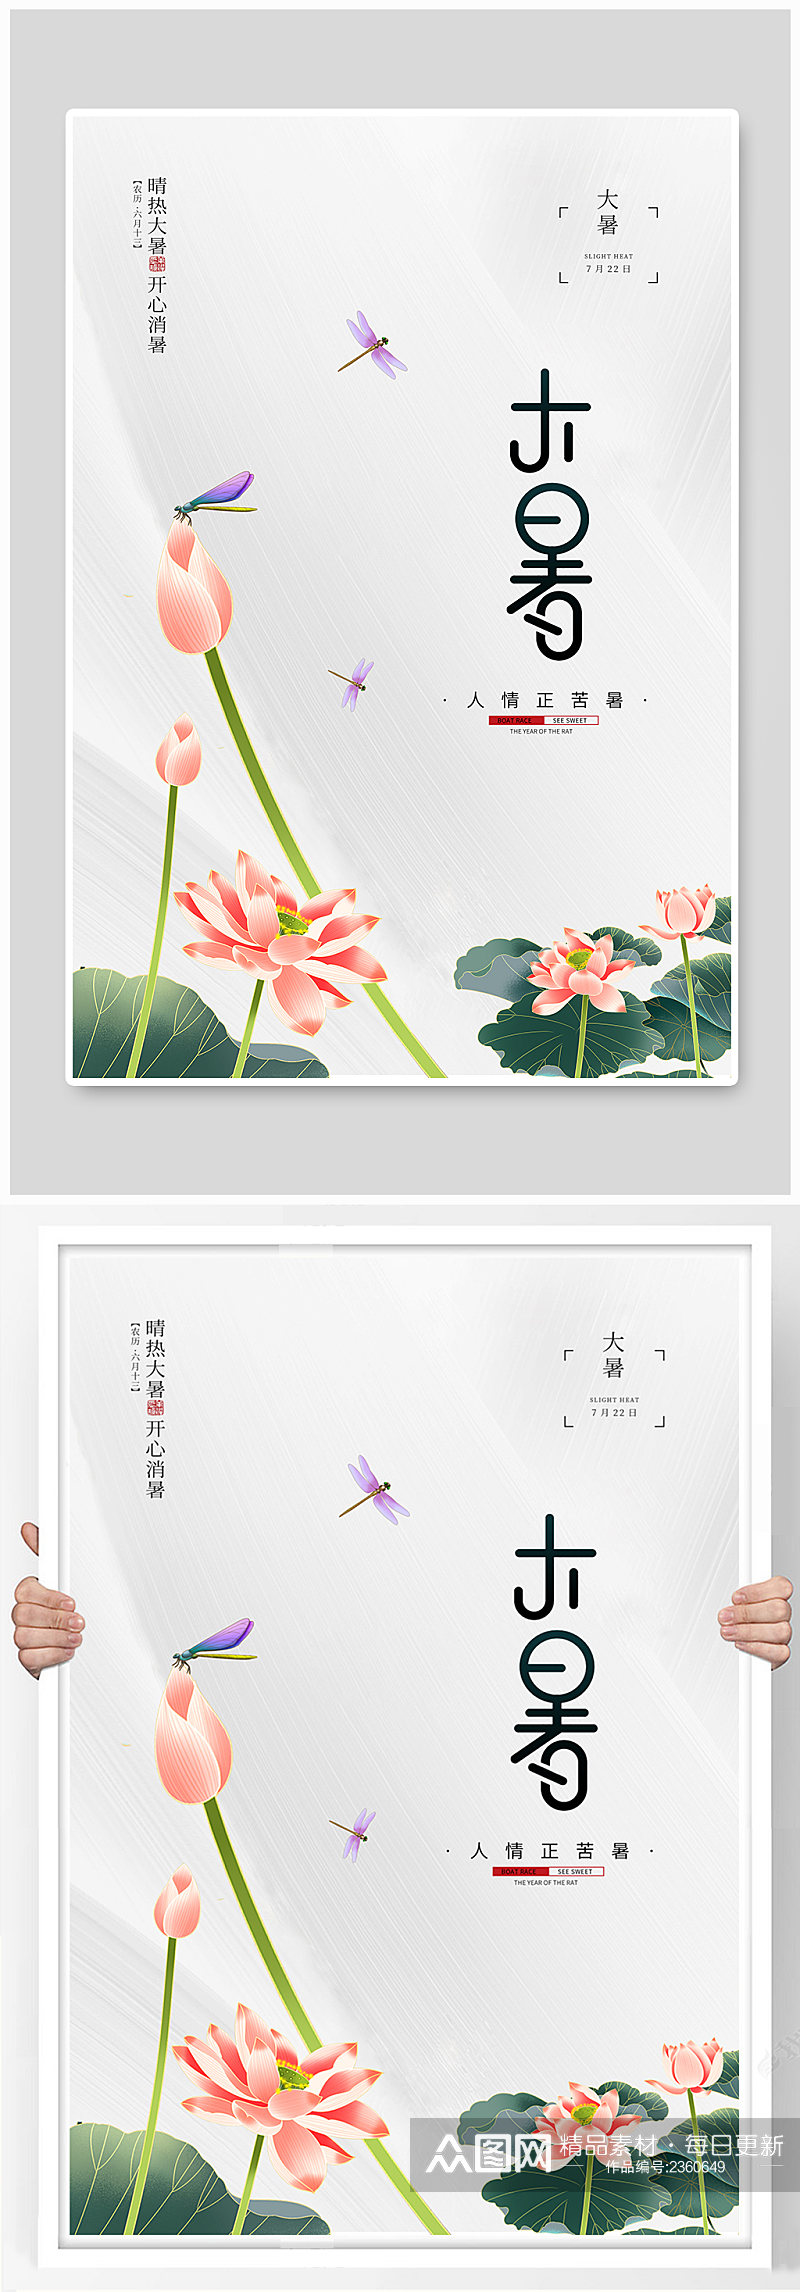 中国风唯美简约创意二十四节气大暑节气海报素材